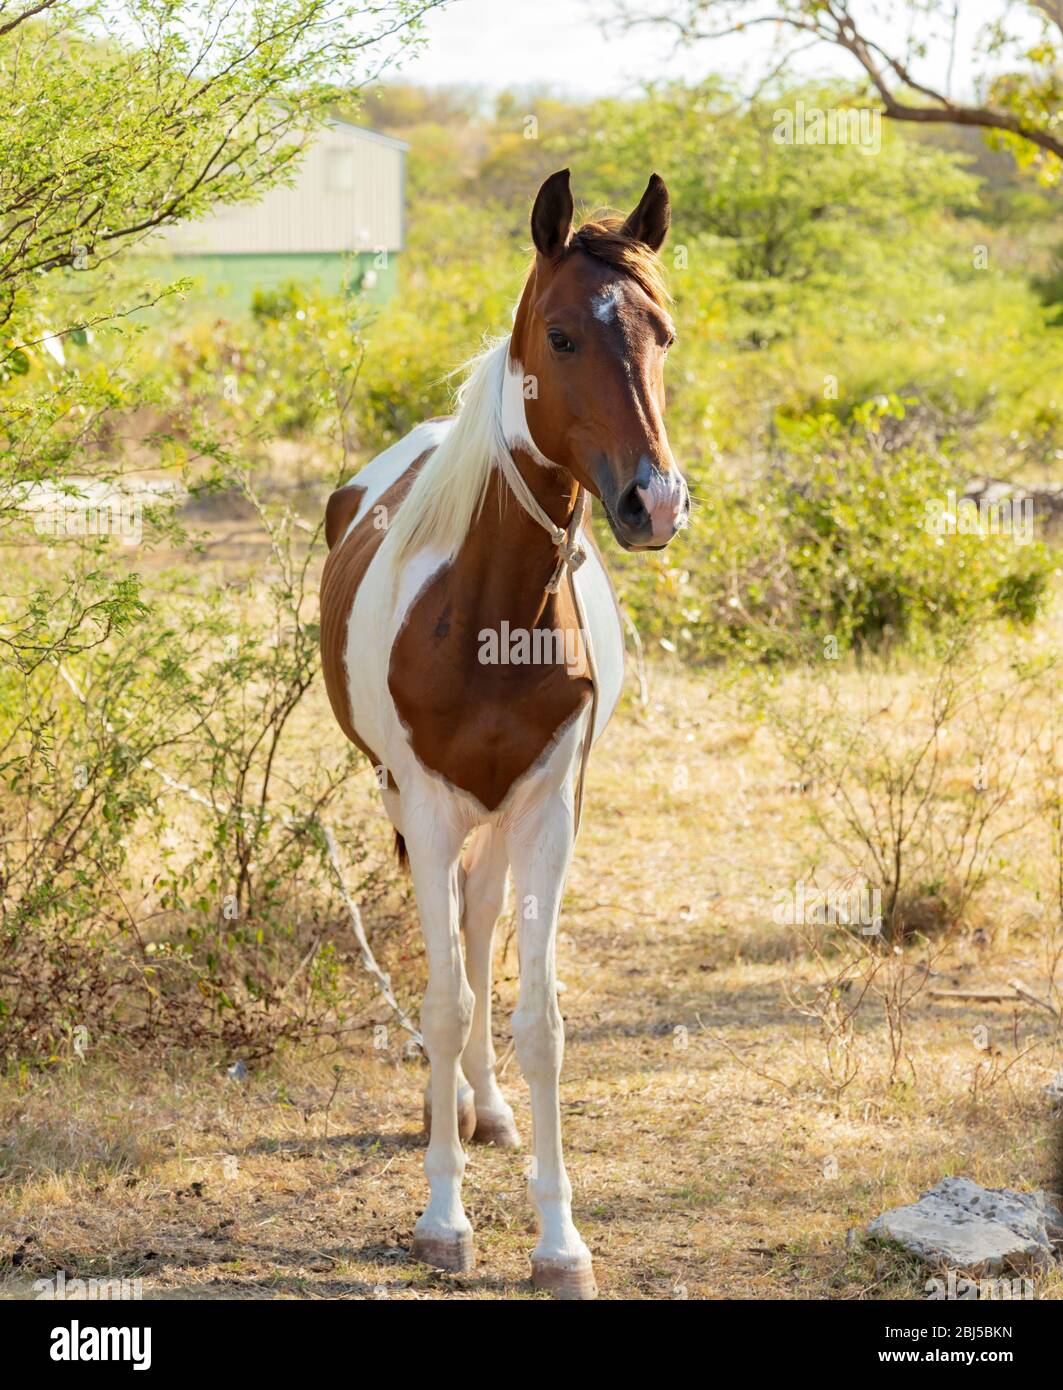 Niedliches braunes und weißes Pferd, das noch mit einem weißen Seil um den Hals gebunden steht, ohne dass ein Reiter direkt auf die Kamera schaut Stockfoto